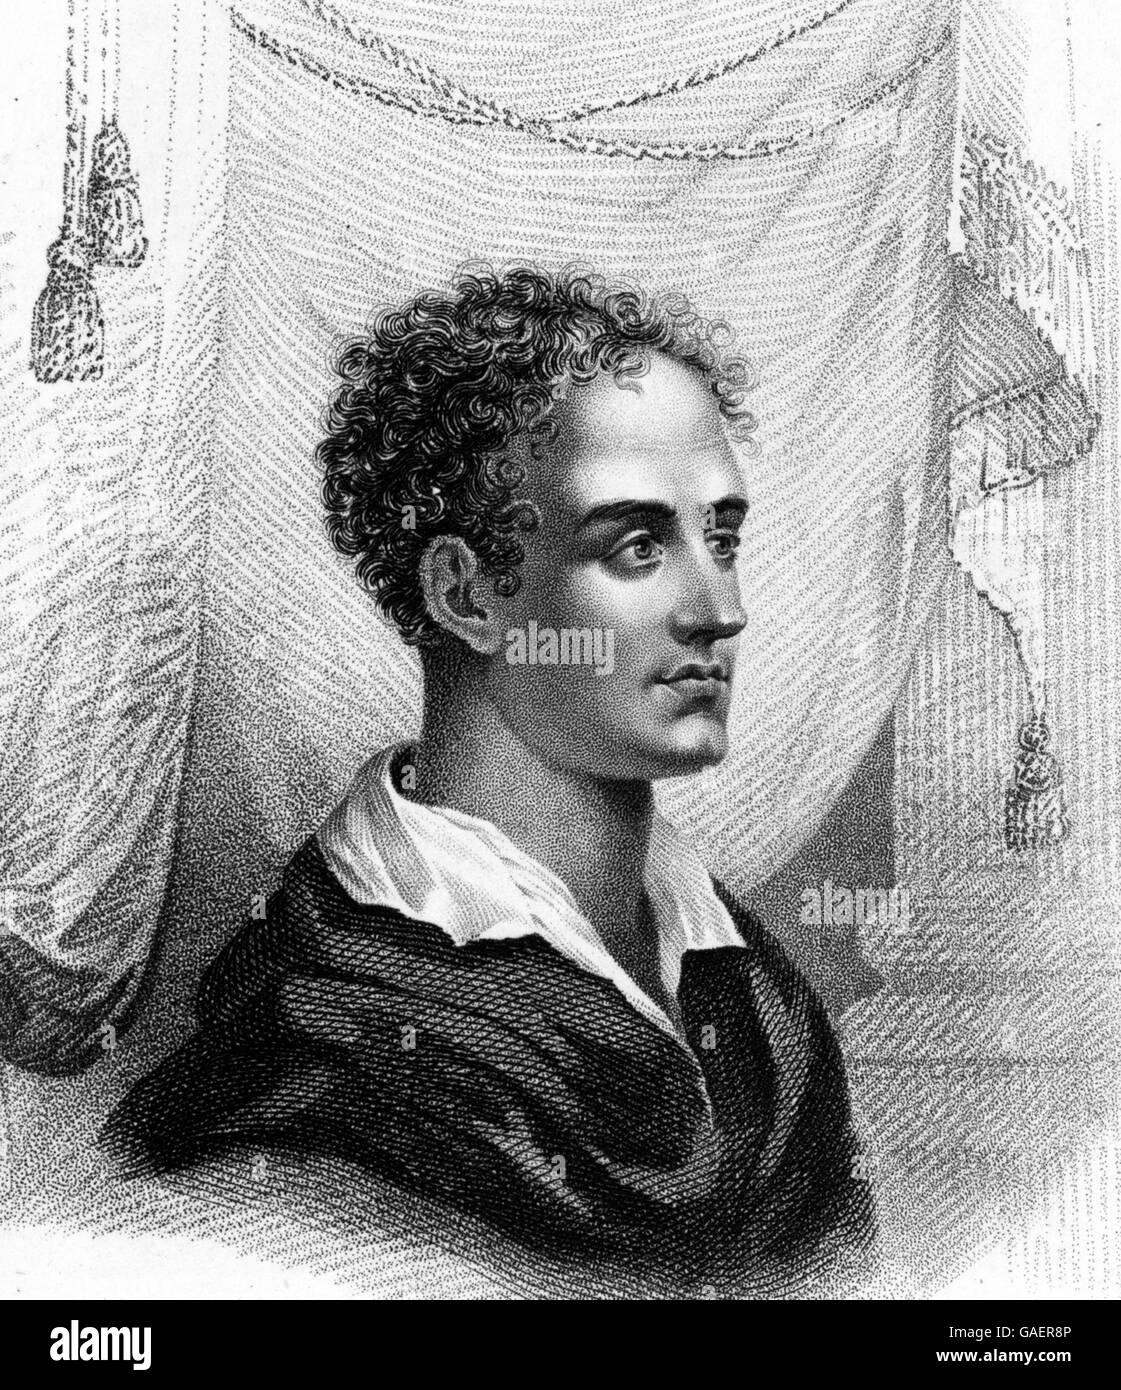 Lord Byron (1788-1824), un poeta inglese e figura di primo piano del movimento romantico. Incisione imbianchini, illustrata da Thomas Addis Emmet, 1880 Foto Stock